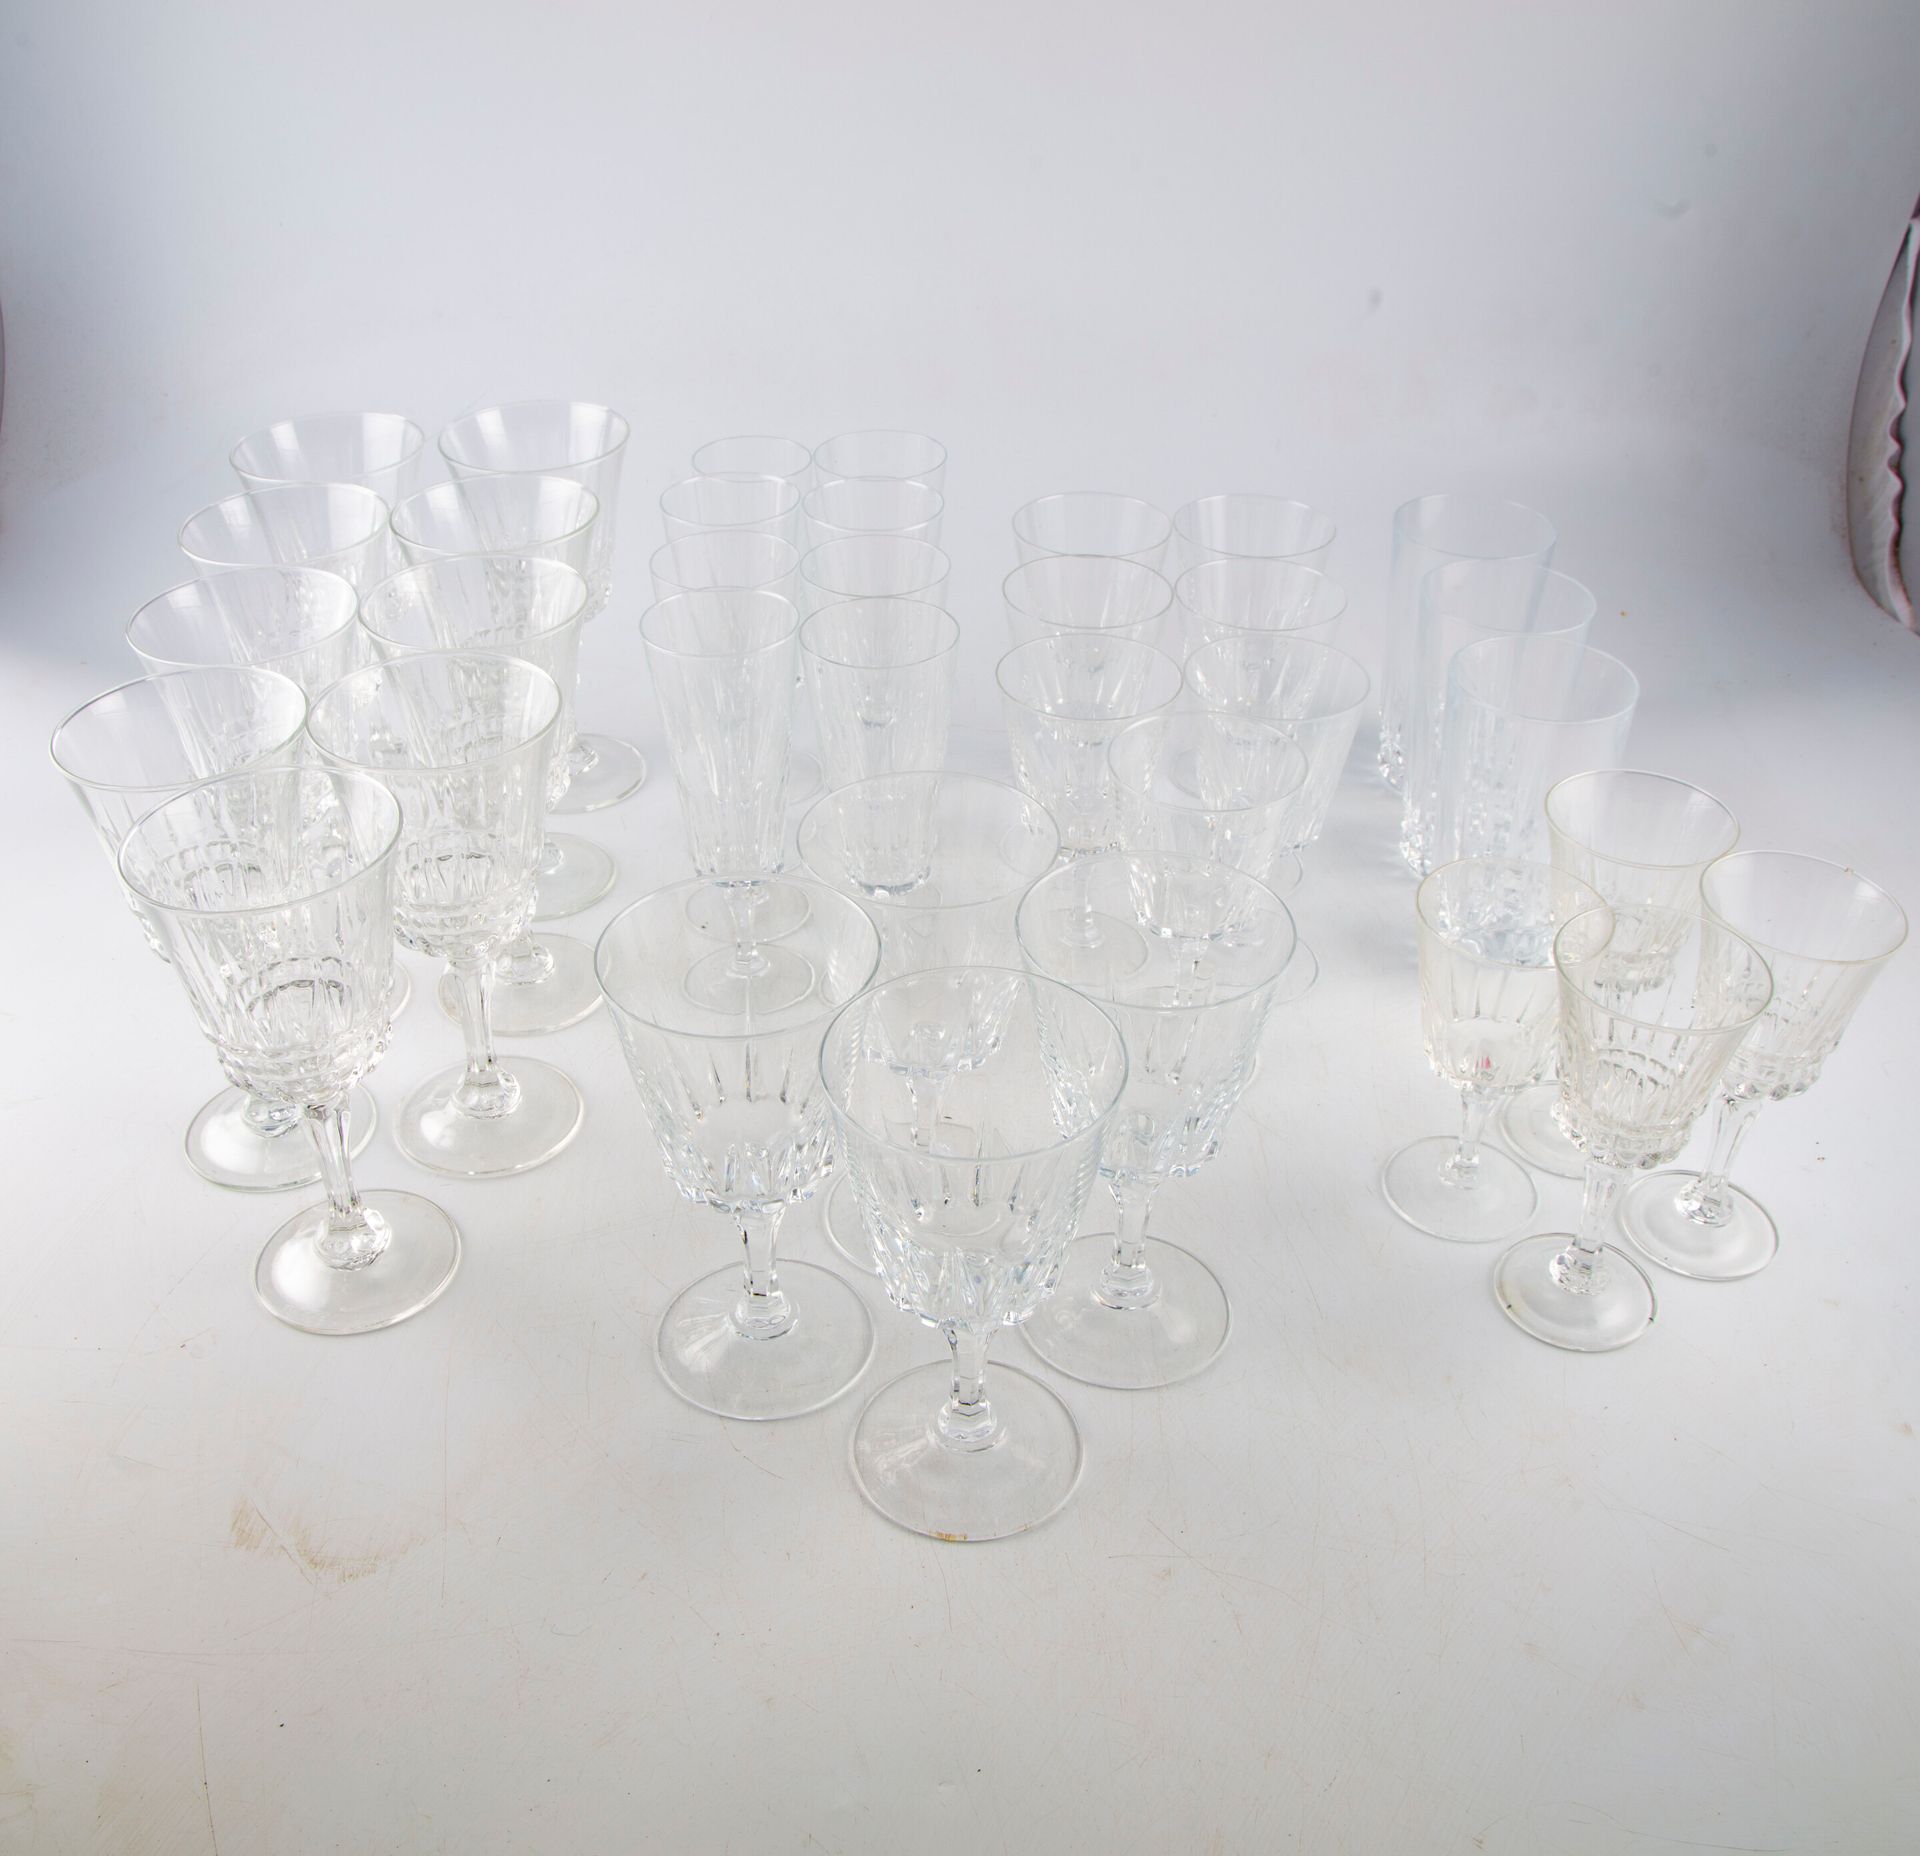 Null Partie de service de verres en cristal comprenant :

7 flûtes

6 verres à e&hellip;